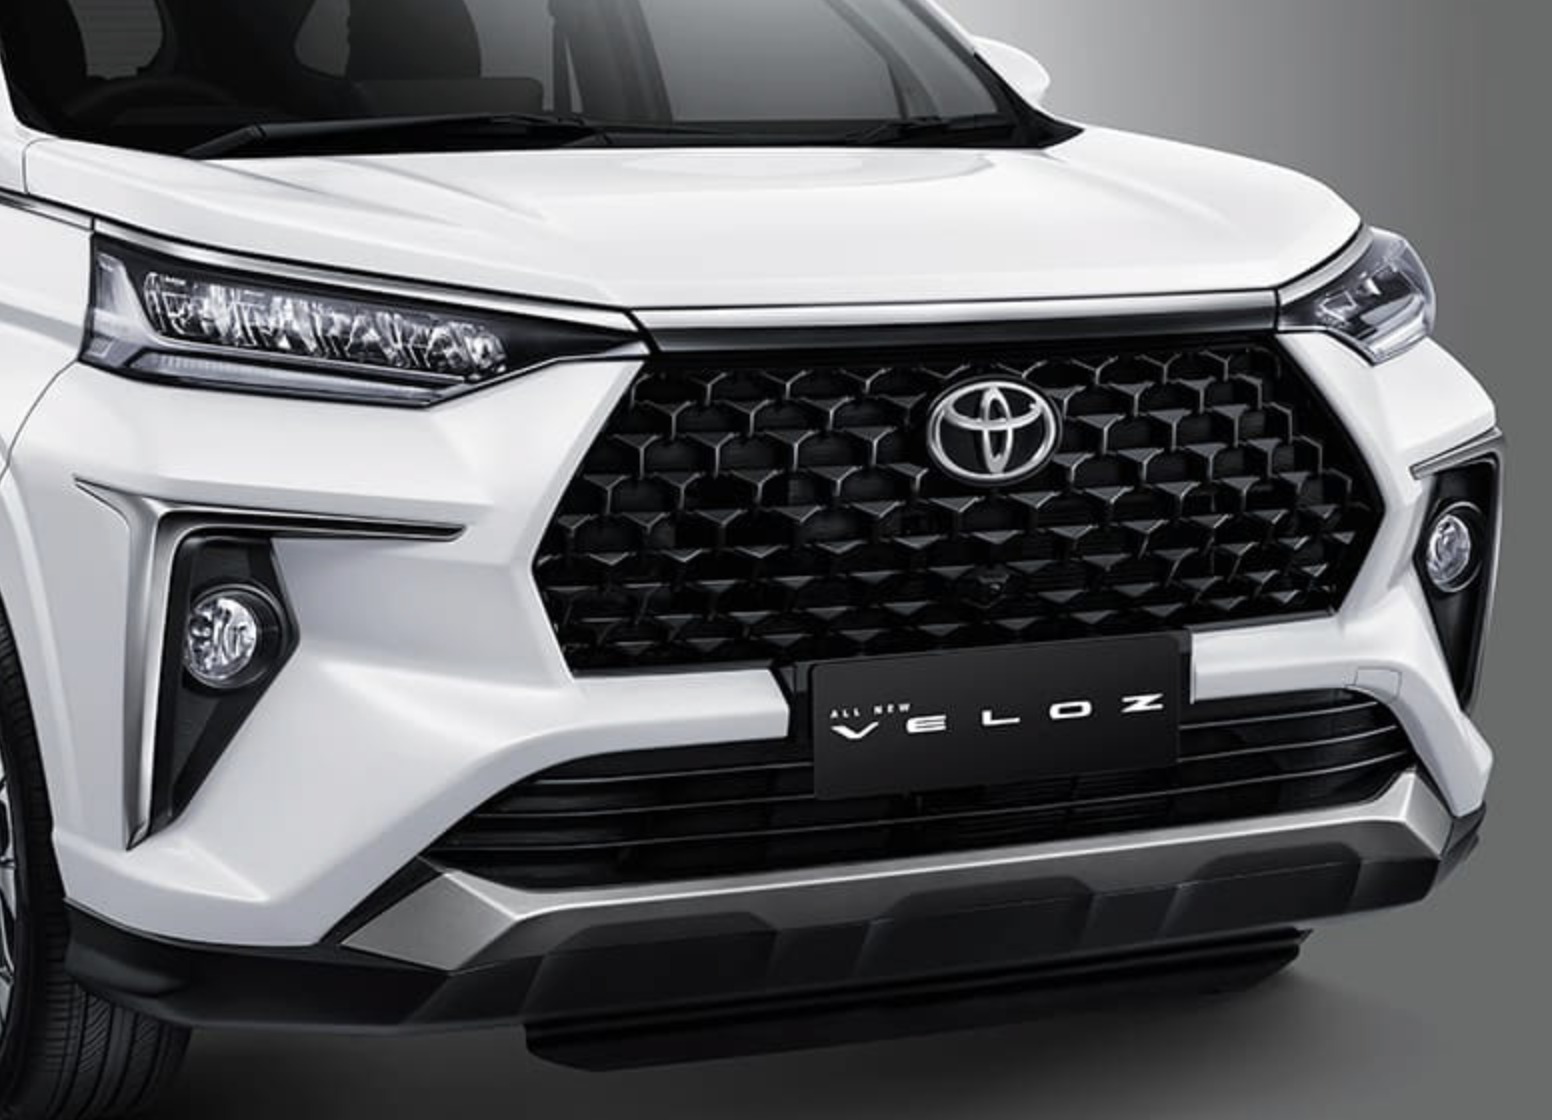 Đại lý nhận đặt cọc Toyota Veloz 2022, dự kiến giao xe tháng 3 Toyota Avanza 2022 chính thức ra mắt, giá từ 14.450 USD screen-shot-2021-11-11-at-003433.png